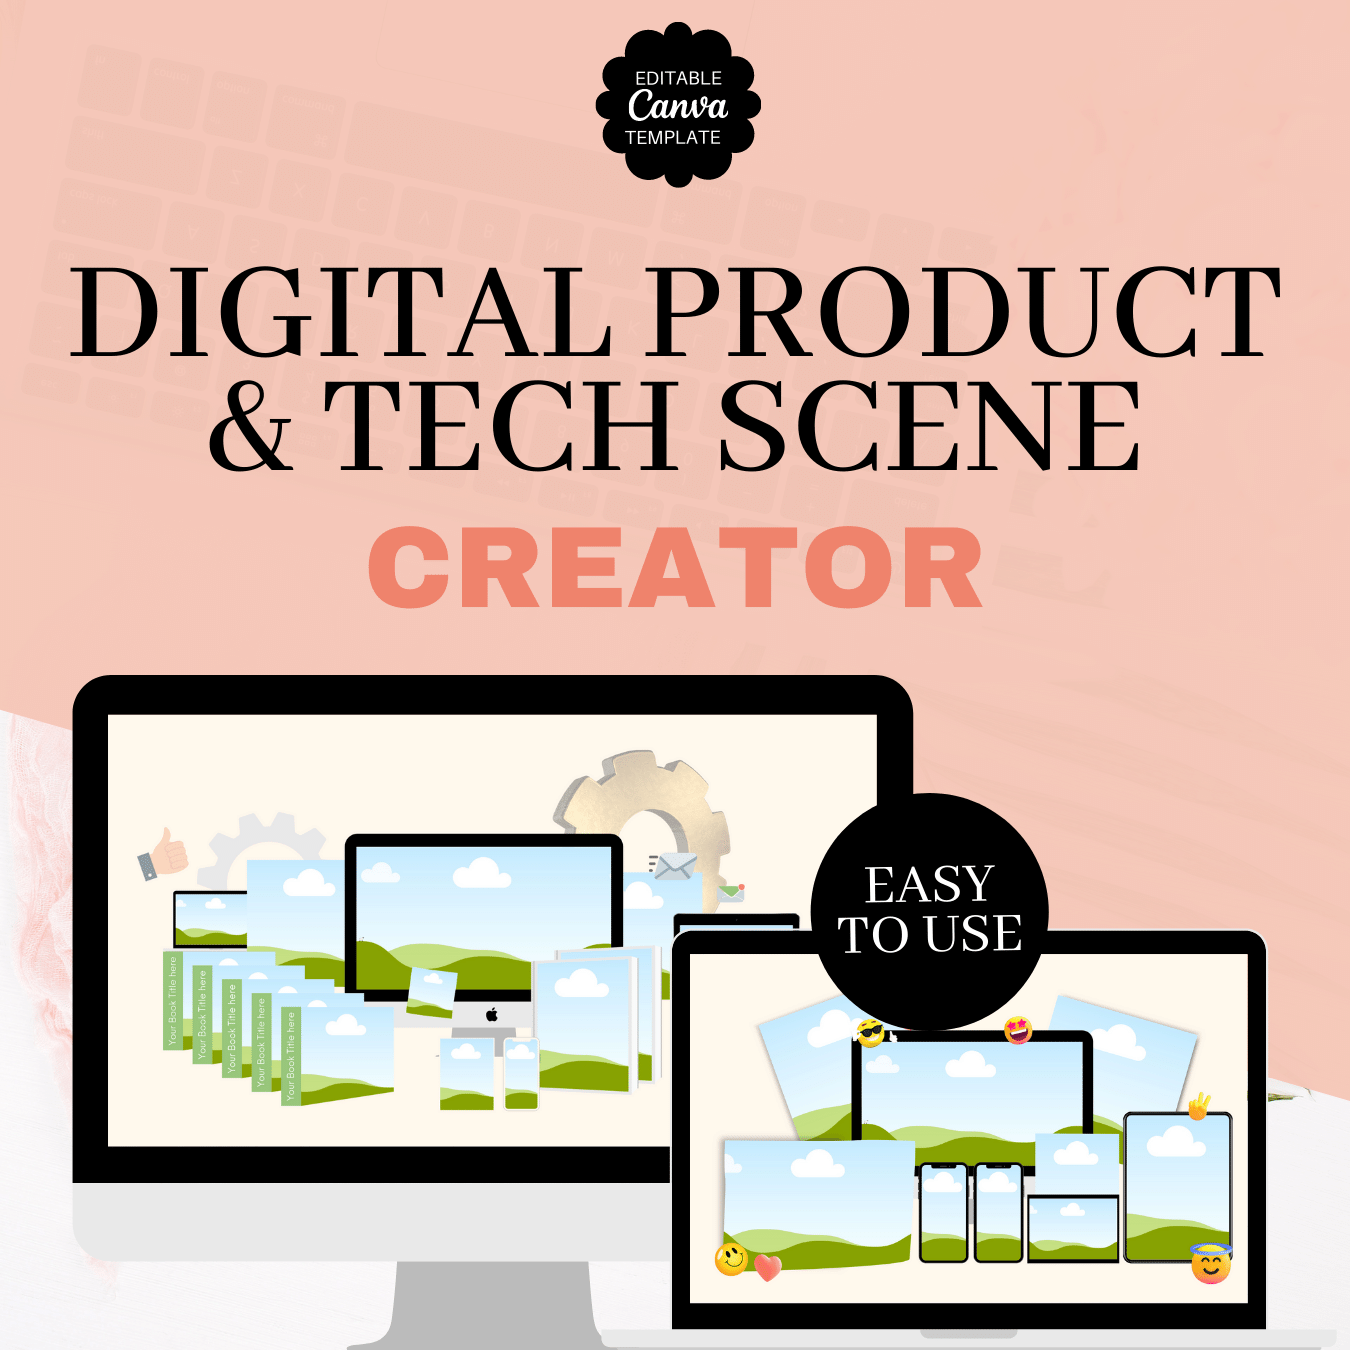 Digital Product & Tech Scene Creator